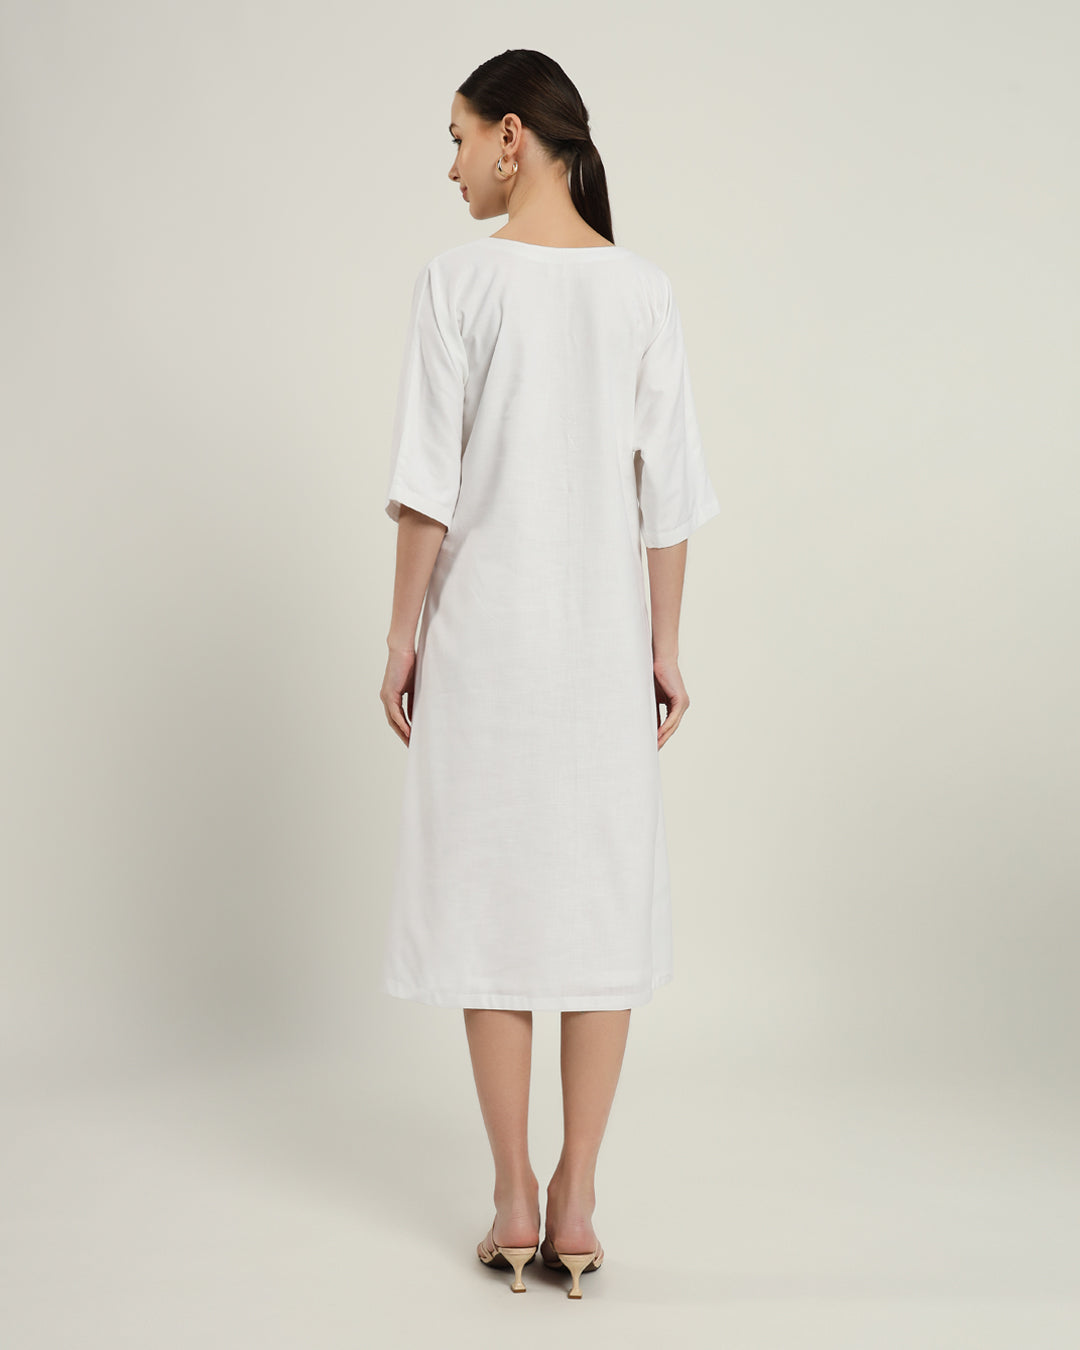 The Mildura Daisy White Linen Dress